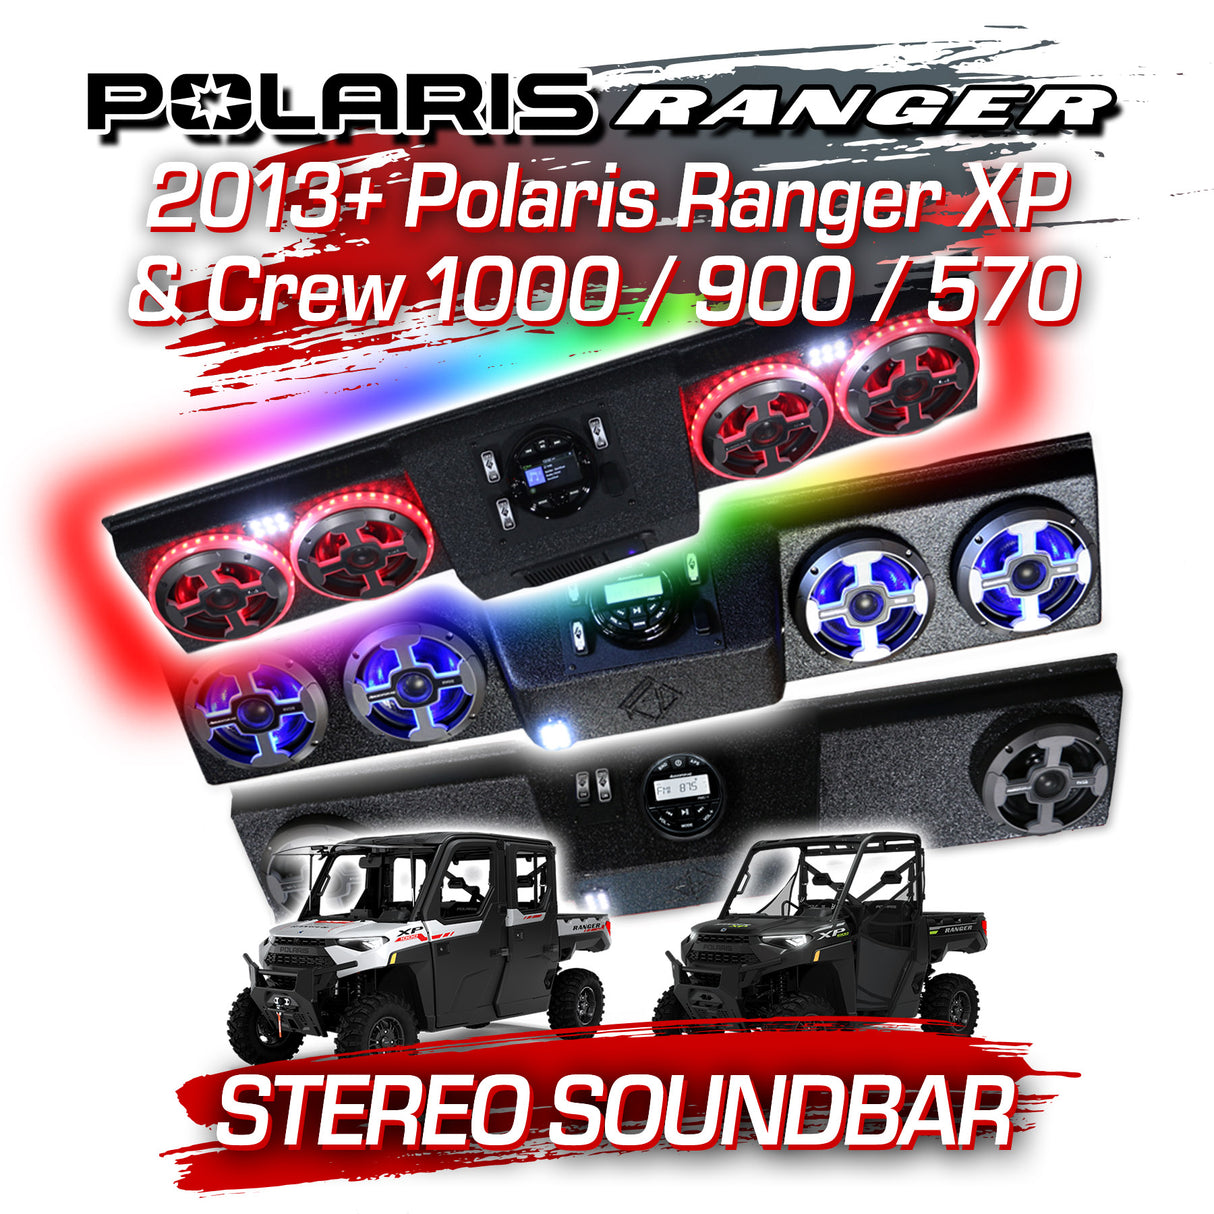 2013+ Polaris Ranger XP & Crew 1000 / 900 / 570 Stereo Soundbar